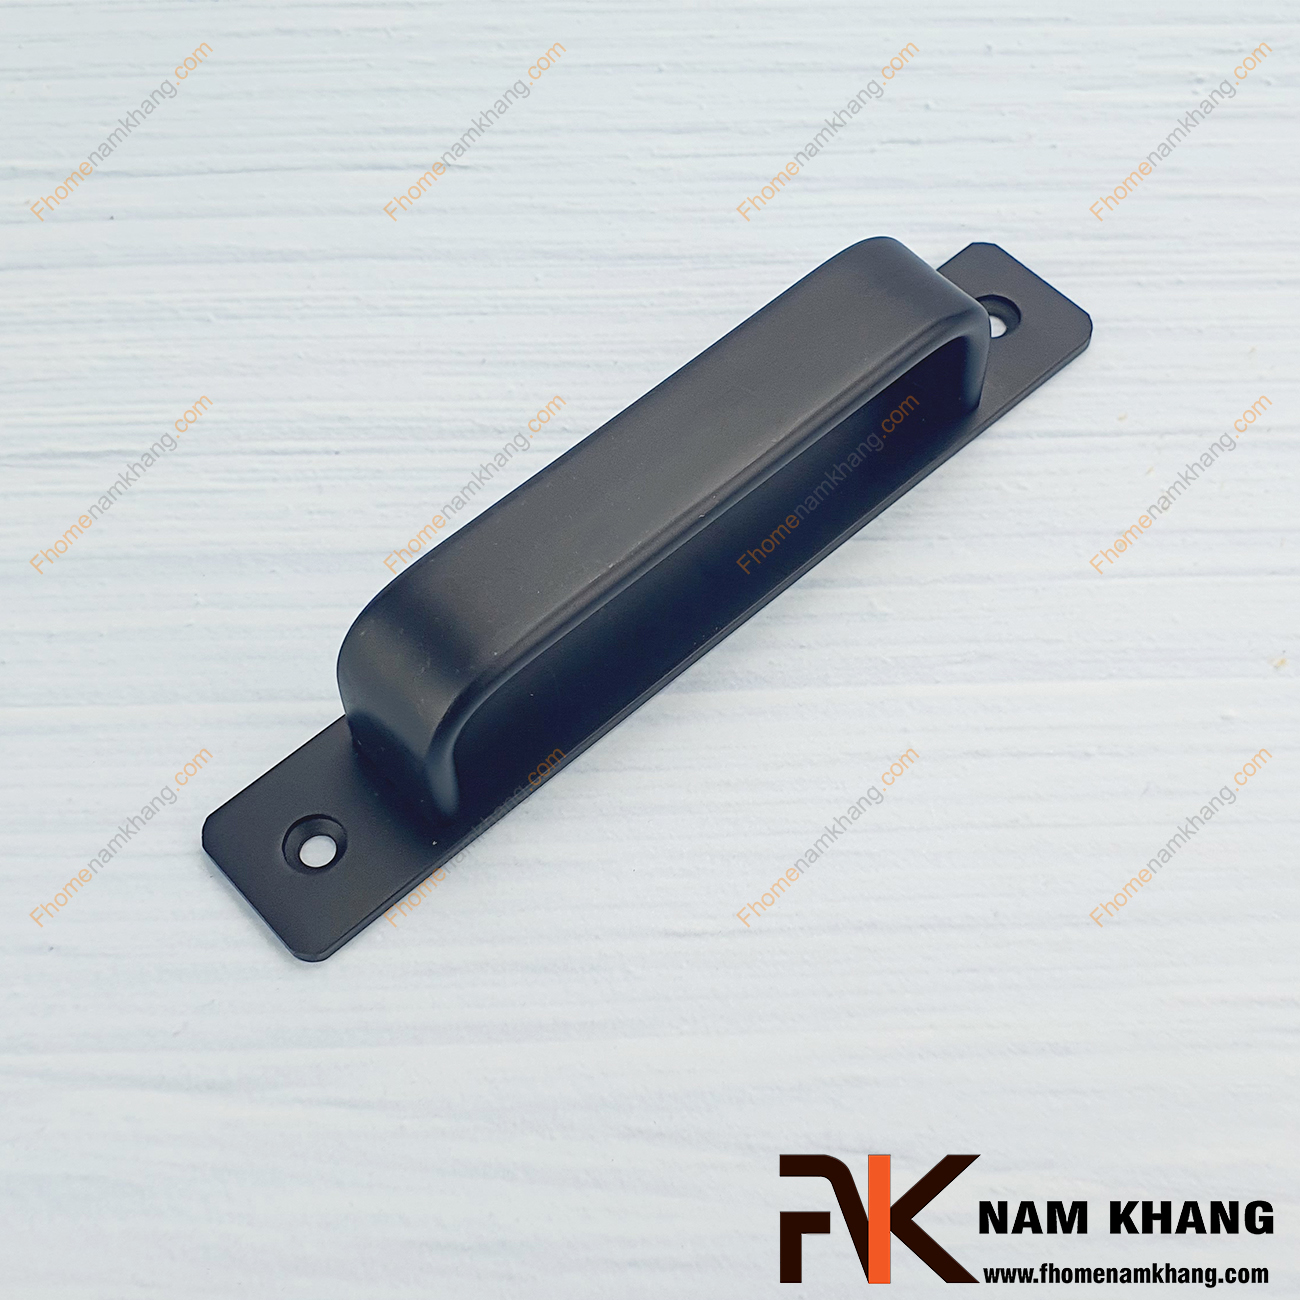 Tay nắm tủ dạng thanh ngang màu đen NK305T-D là dạng tay nắm phối hợp với thanh dài rất đơn giản nhưng lại cực kì sang trọng.